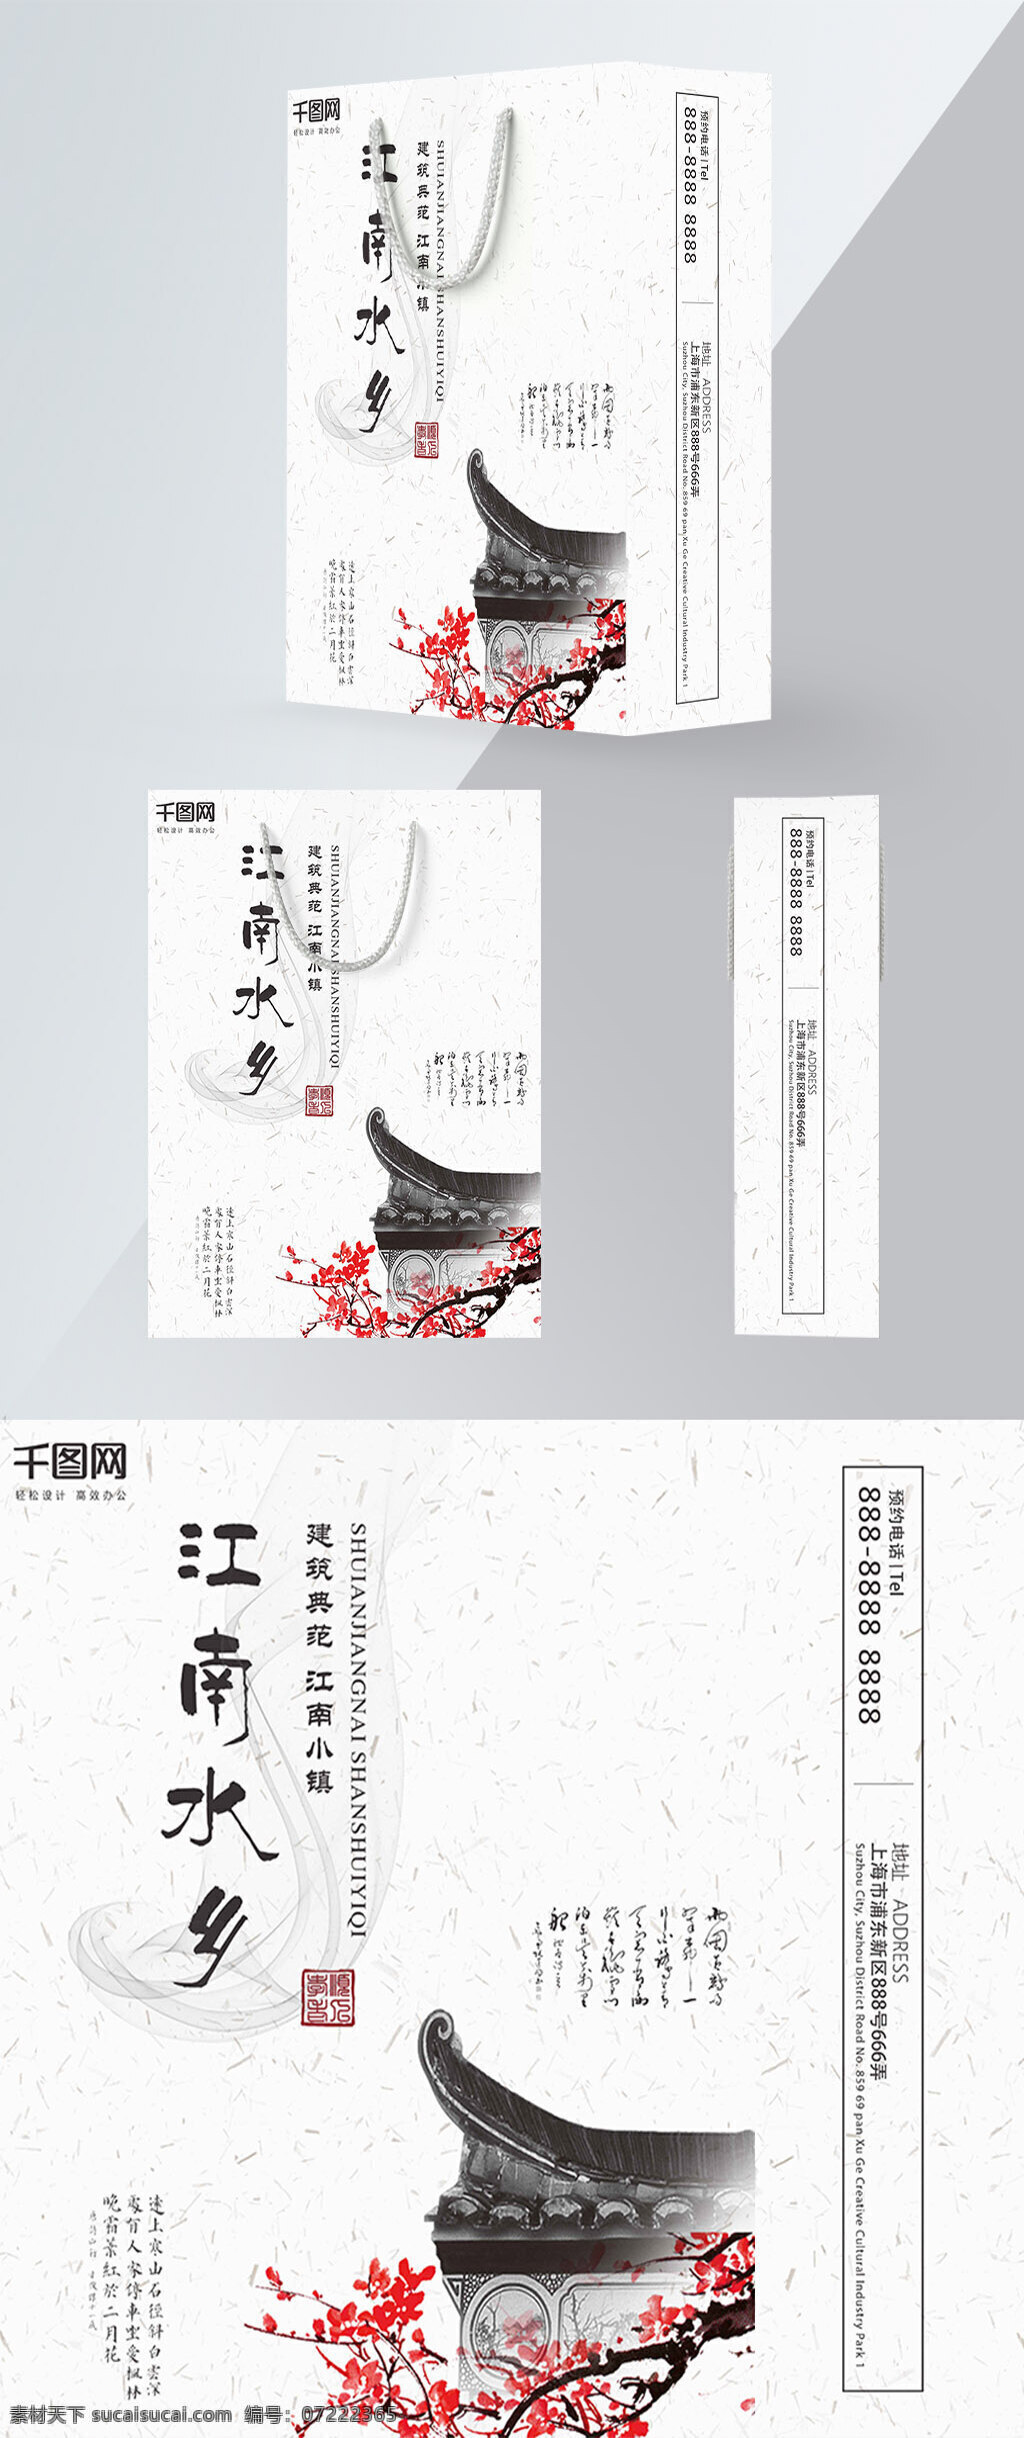 精品 手提袋 白色 中国 风 江南 水乡 包装设计 宣传 古镇 简约 旅游社